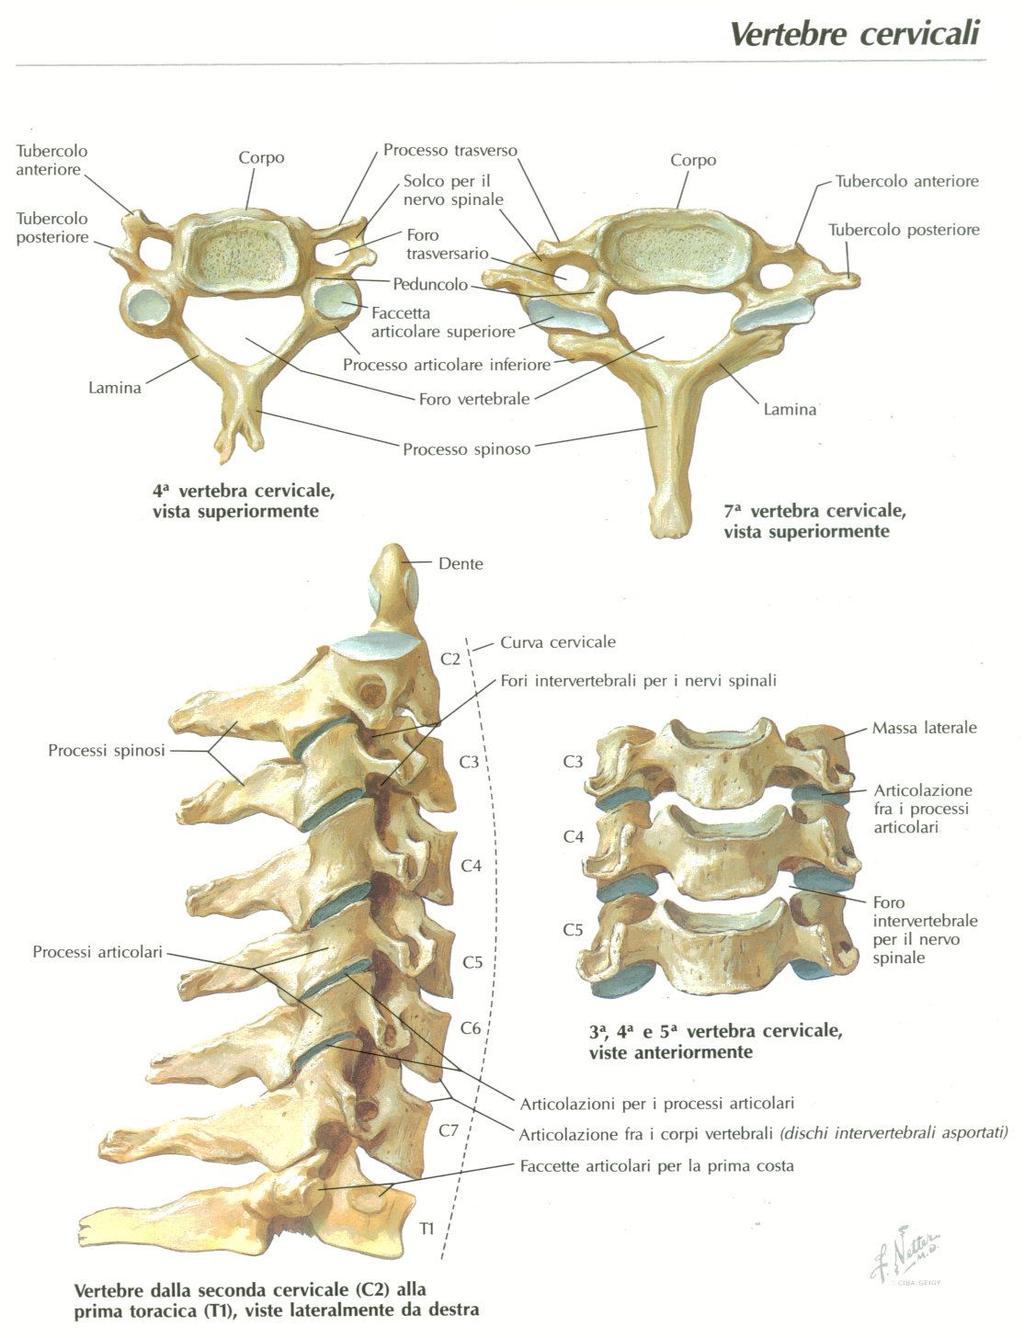 morfologiche delle vertebre si modificano procedendo in direzione cranio-caudale.